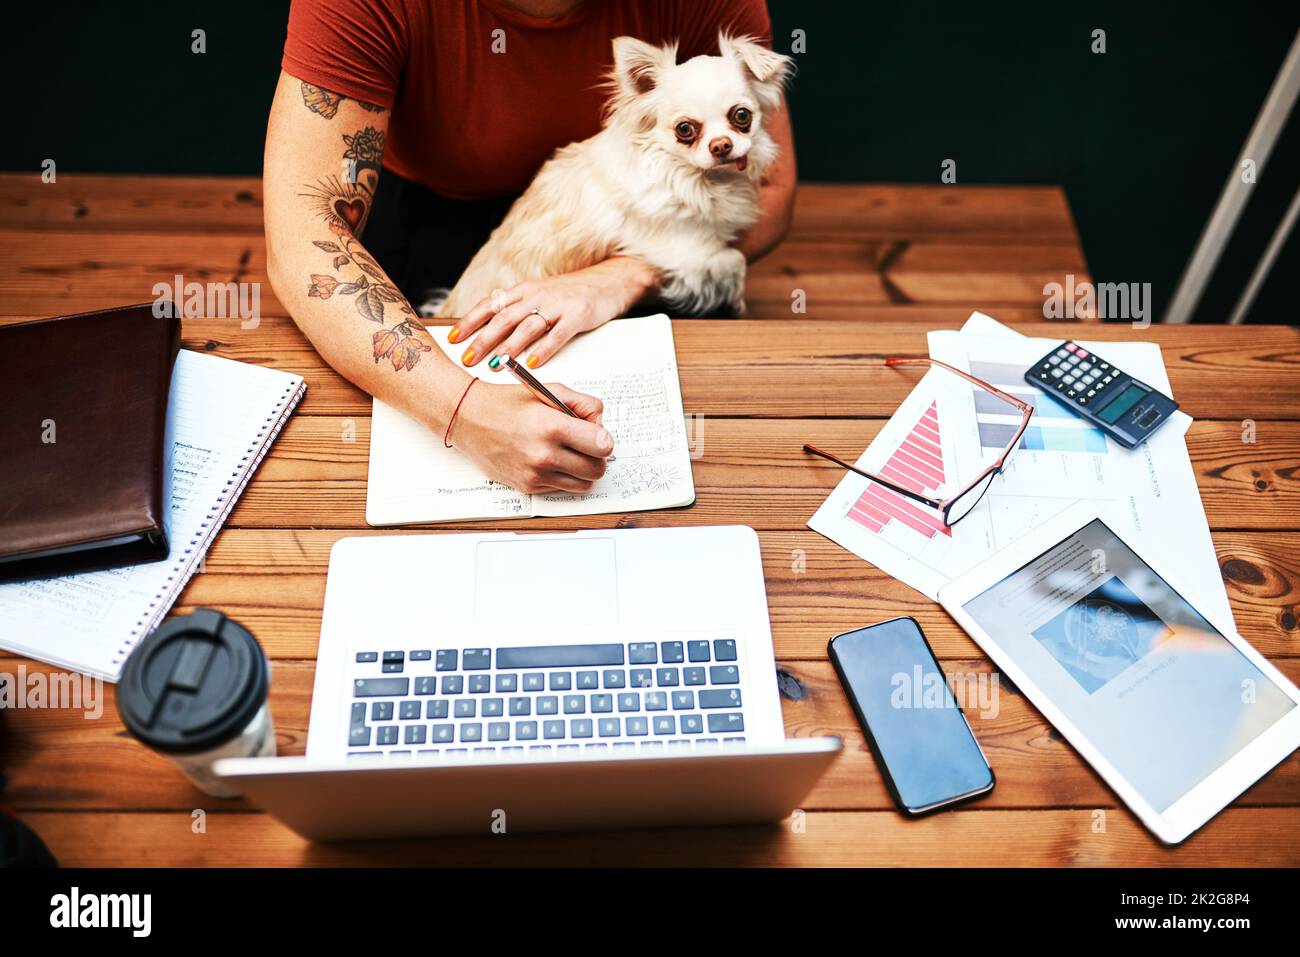 Mon meilleur ami veut toujours se câliner pendant que je travaille. Photo en grand angle d'une femme d'affaires méconnue assise avec son chien et écrivant dans son carnet. Banque D'Images